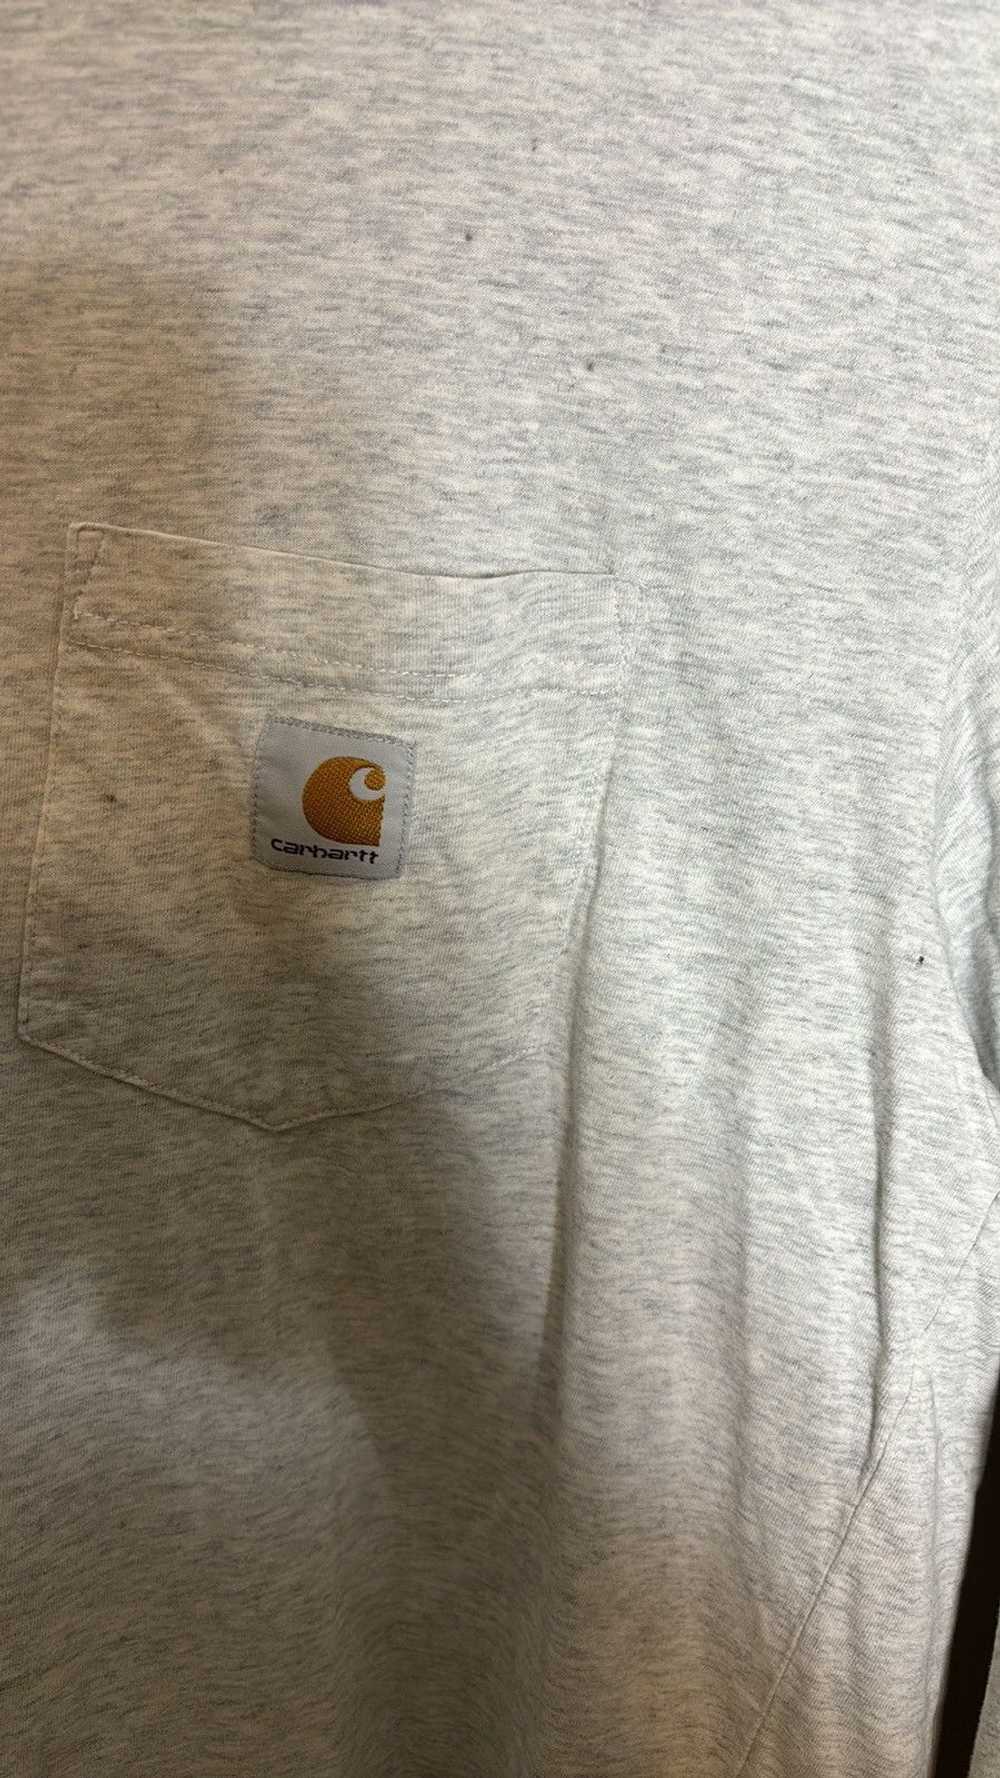 Carhartt × Carhartt Wip Carhartt WIP Shirt - image 2